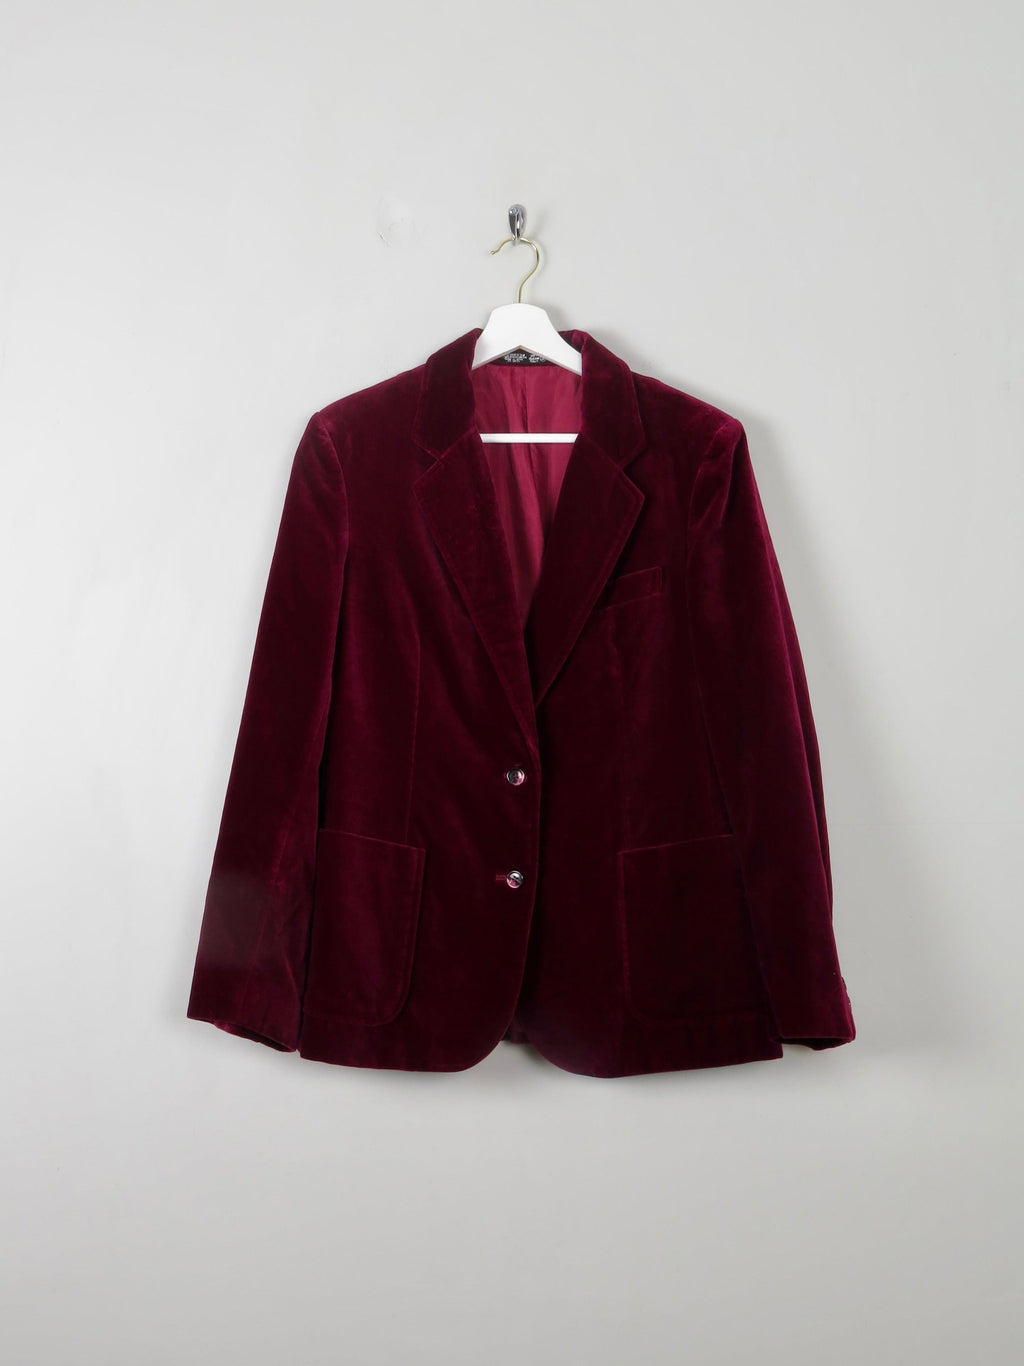 Women's Vintage Rasberry Velvet Jacket L - The Harlequin